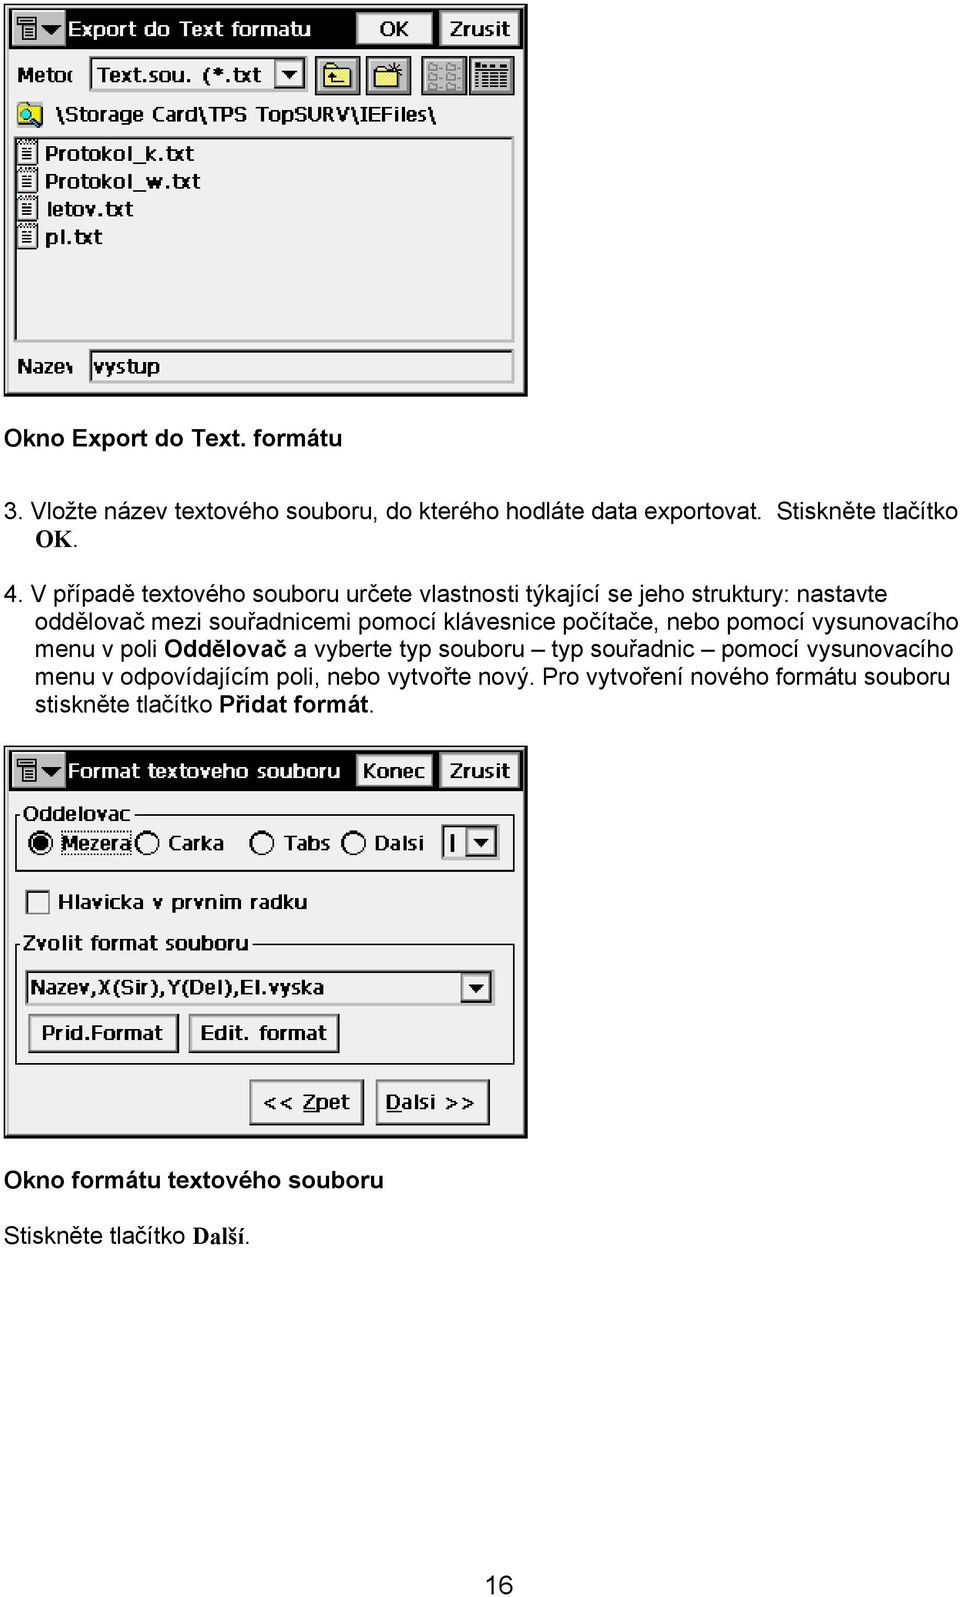 počítače, nebo pomocí vysunovacího menu v poli Oddělovač a vyberte typ souboru typ souřadnic pomocí vysunovacího menu v odpovídajícím